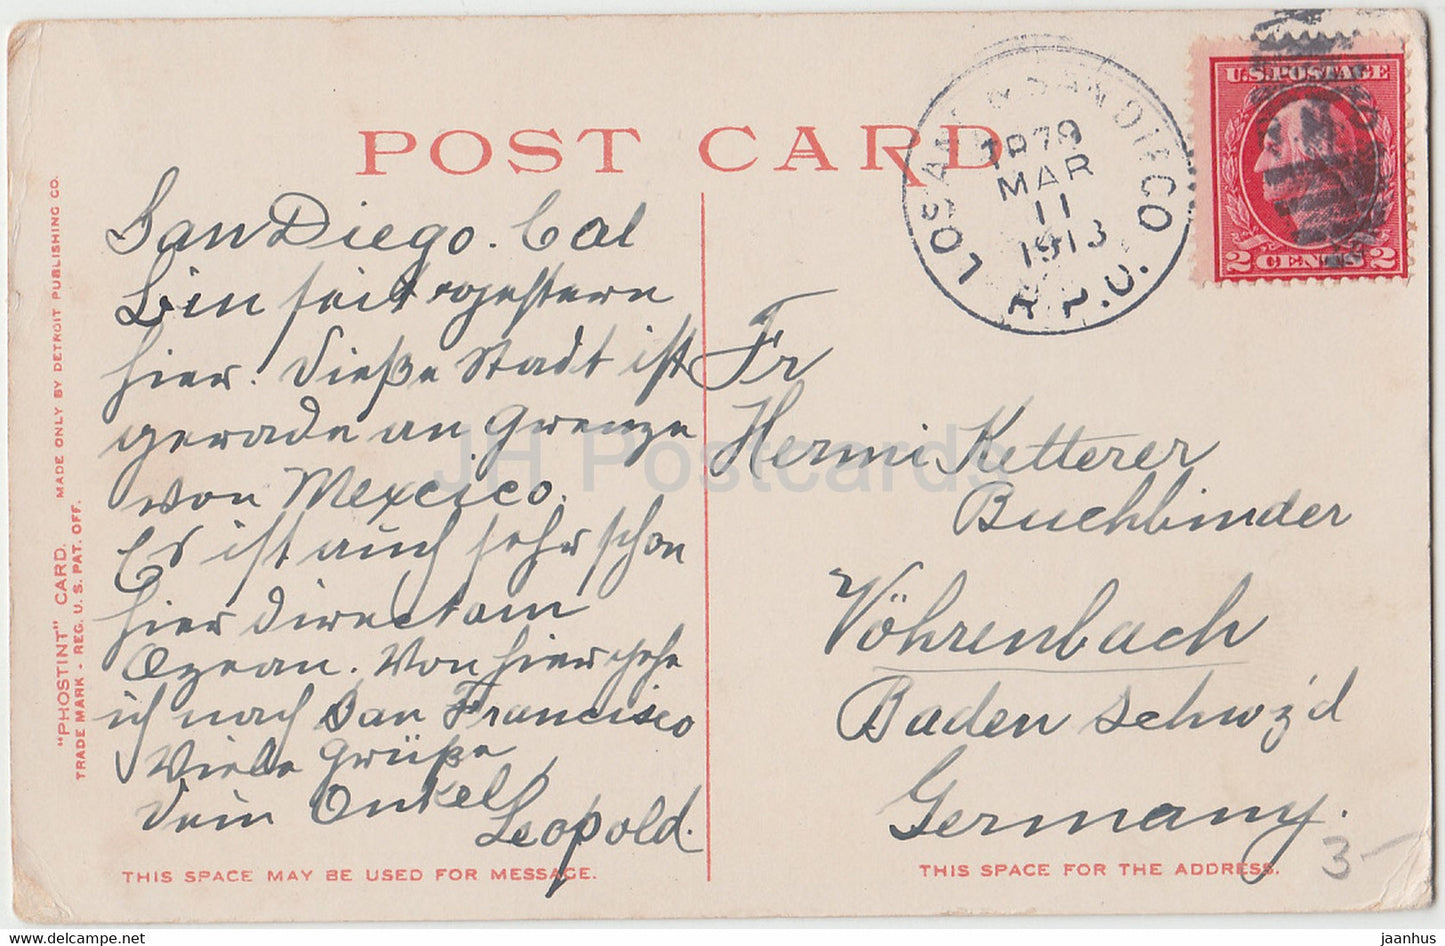 San Diego – Mission Heights Pavilion – Kalifornien – 12785 – alte Postkarte – 1913 – Vereinigte Staaten USA – gebraucht